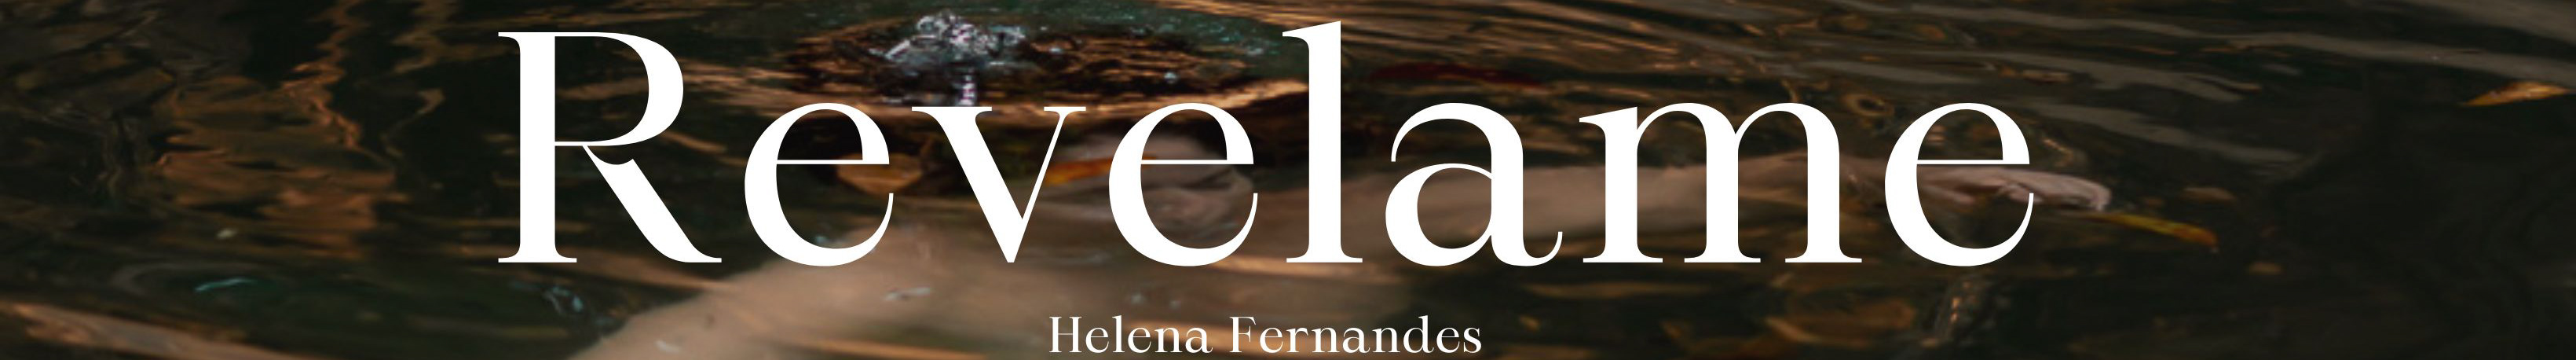 Helena Fernandes's profile banner